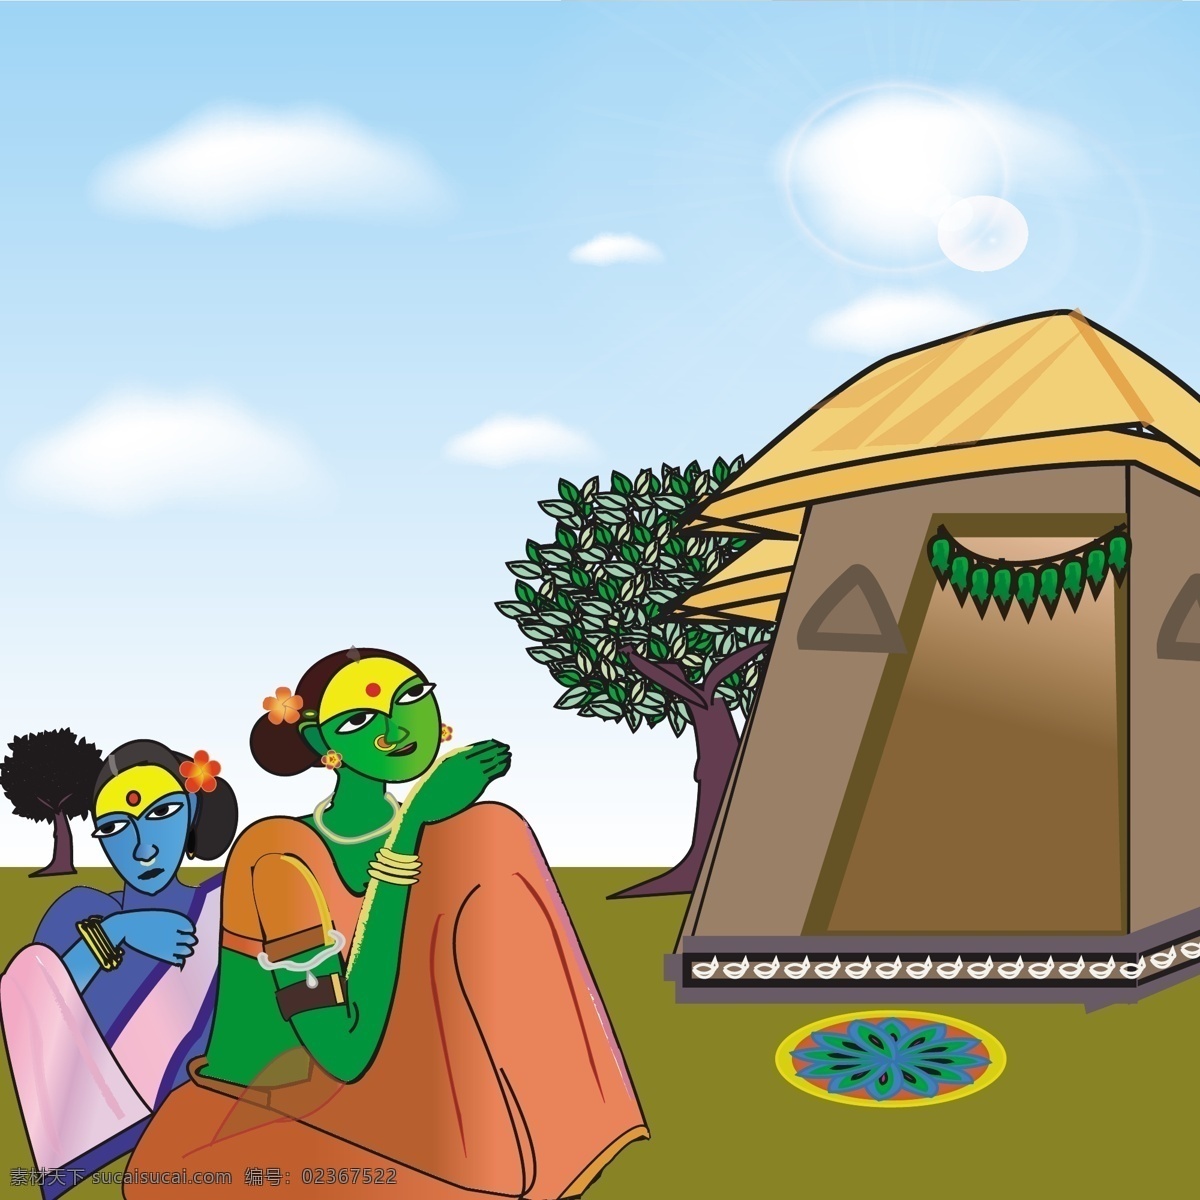 画 chitramayee 印度 乡村 背景 矢量 插画 创意 高分辨率 接口 免费 少数民族 病 媒 生物 时尚 独特的 原始的 高质量 设计新的 ui元素 hd 元素 详细的 印度村 印第安人 村庄 帐篷 人工智能 女士 本土的 印度部落 psd源文件